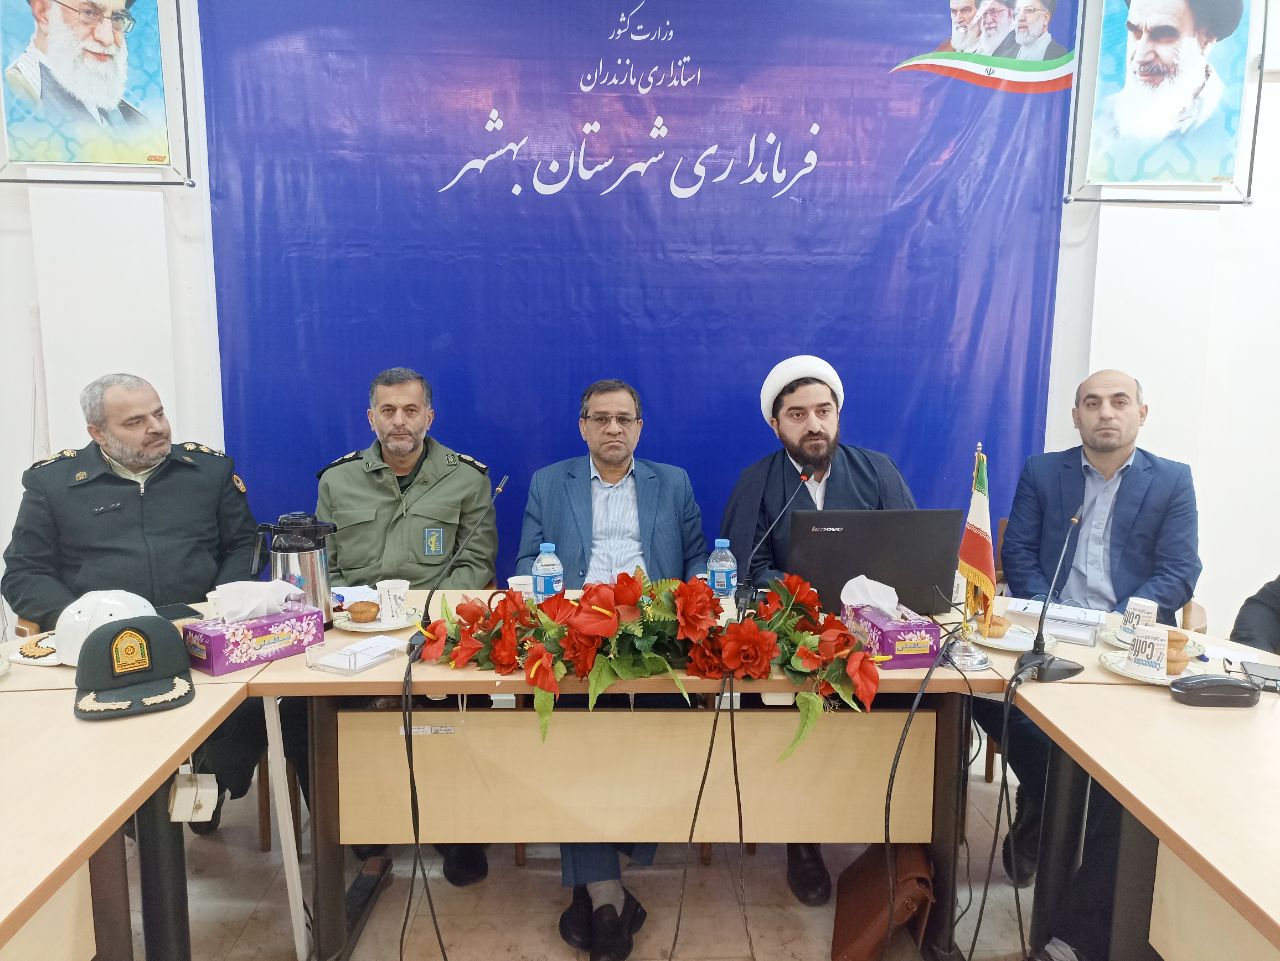 برگزاری جلسه شورای اداری شهرستان بهشهر در سالن اجتماعات فرمانداری